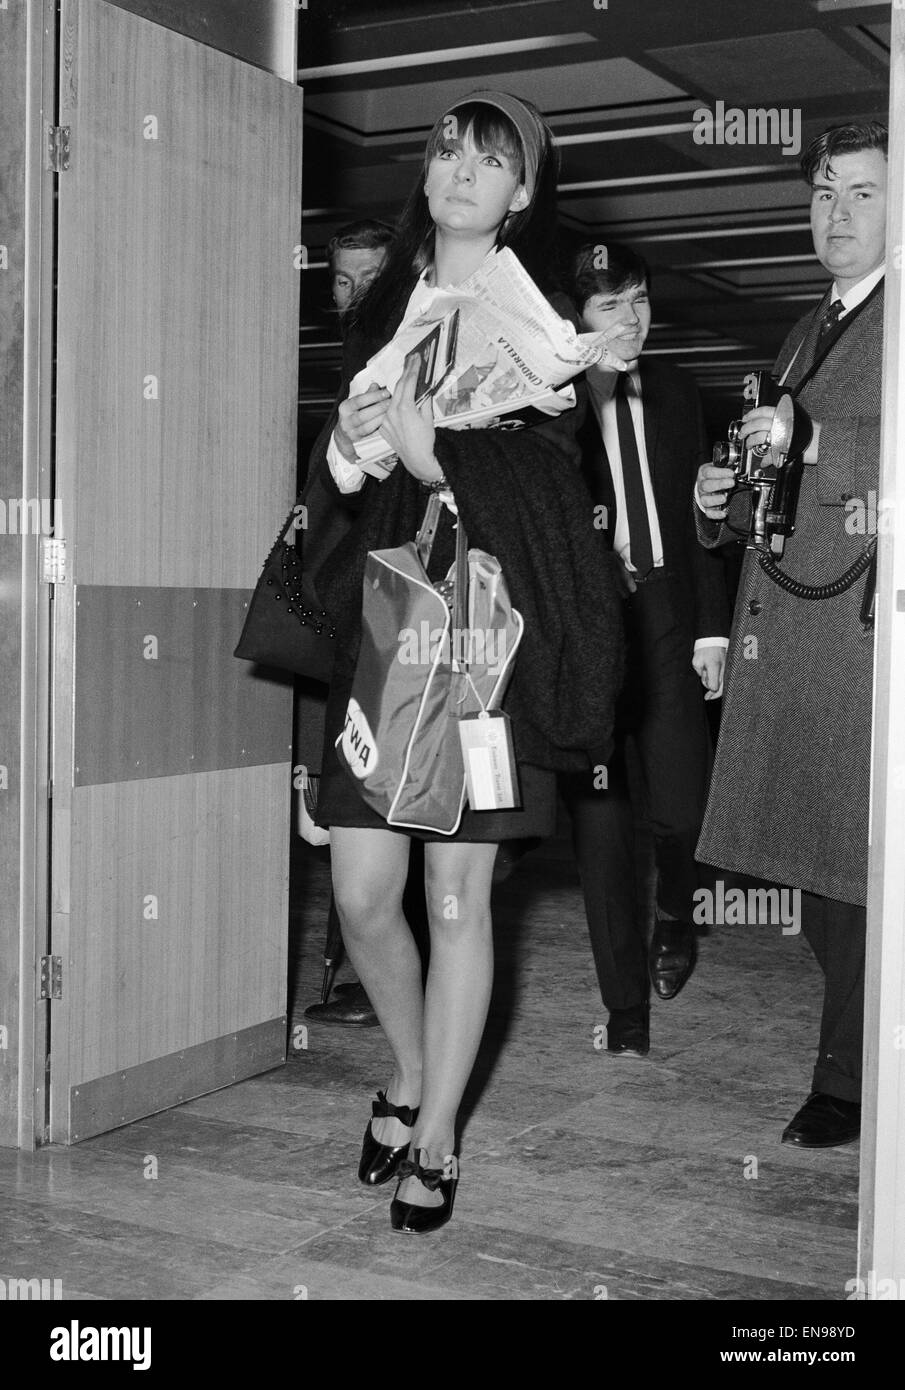 Chrissie Shrimpton, petite amie de Mick Jagger des Rolling Stones, de prendre l'avion pour le rejoindre à la fin de sa tournée aux États-Unis. 4 Décembre 1965 Banque D'Images